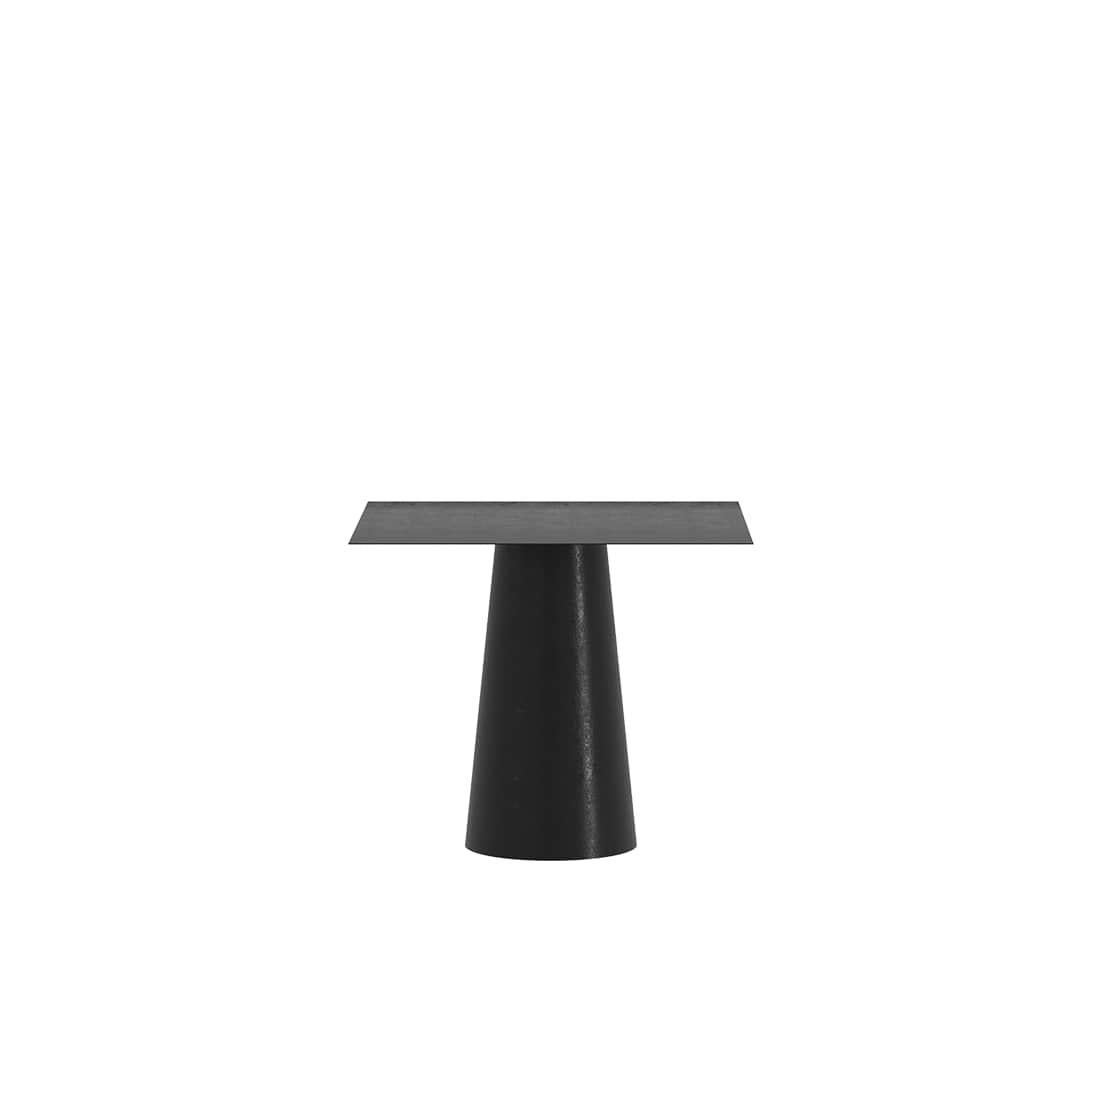 Der Conic Square Dining Table ist ein monolithisches Stück, das als Esstisch für den Innen- und Außenbereich konzipiert wurde. 
Er wird in Handarbeit aus galvanisiertem Aluminium gefertigt und mit einer matten elektrostatischen Beschichtung